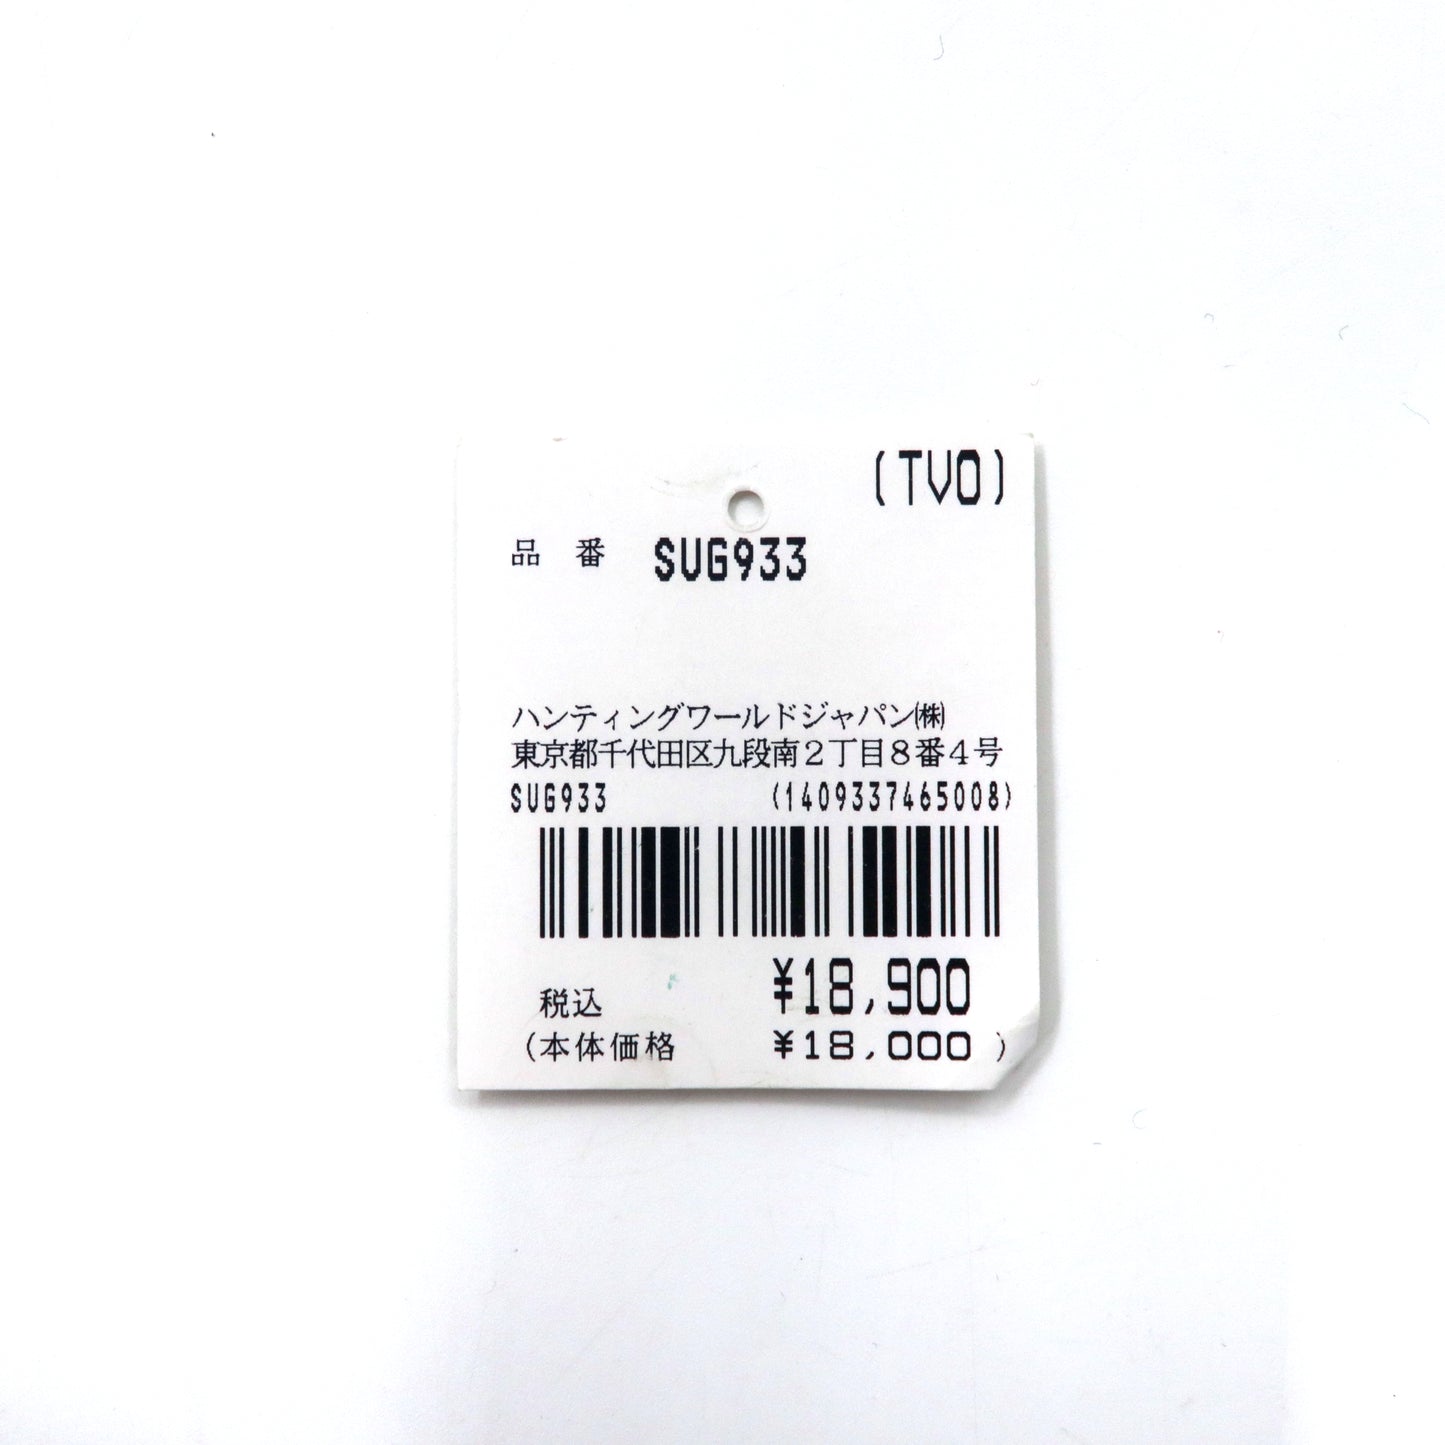 HUNTING WORLD バチューサーパス コインケース 小銭入れ カーキ PVC レザー 7･I･1･10 イタリア製